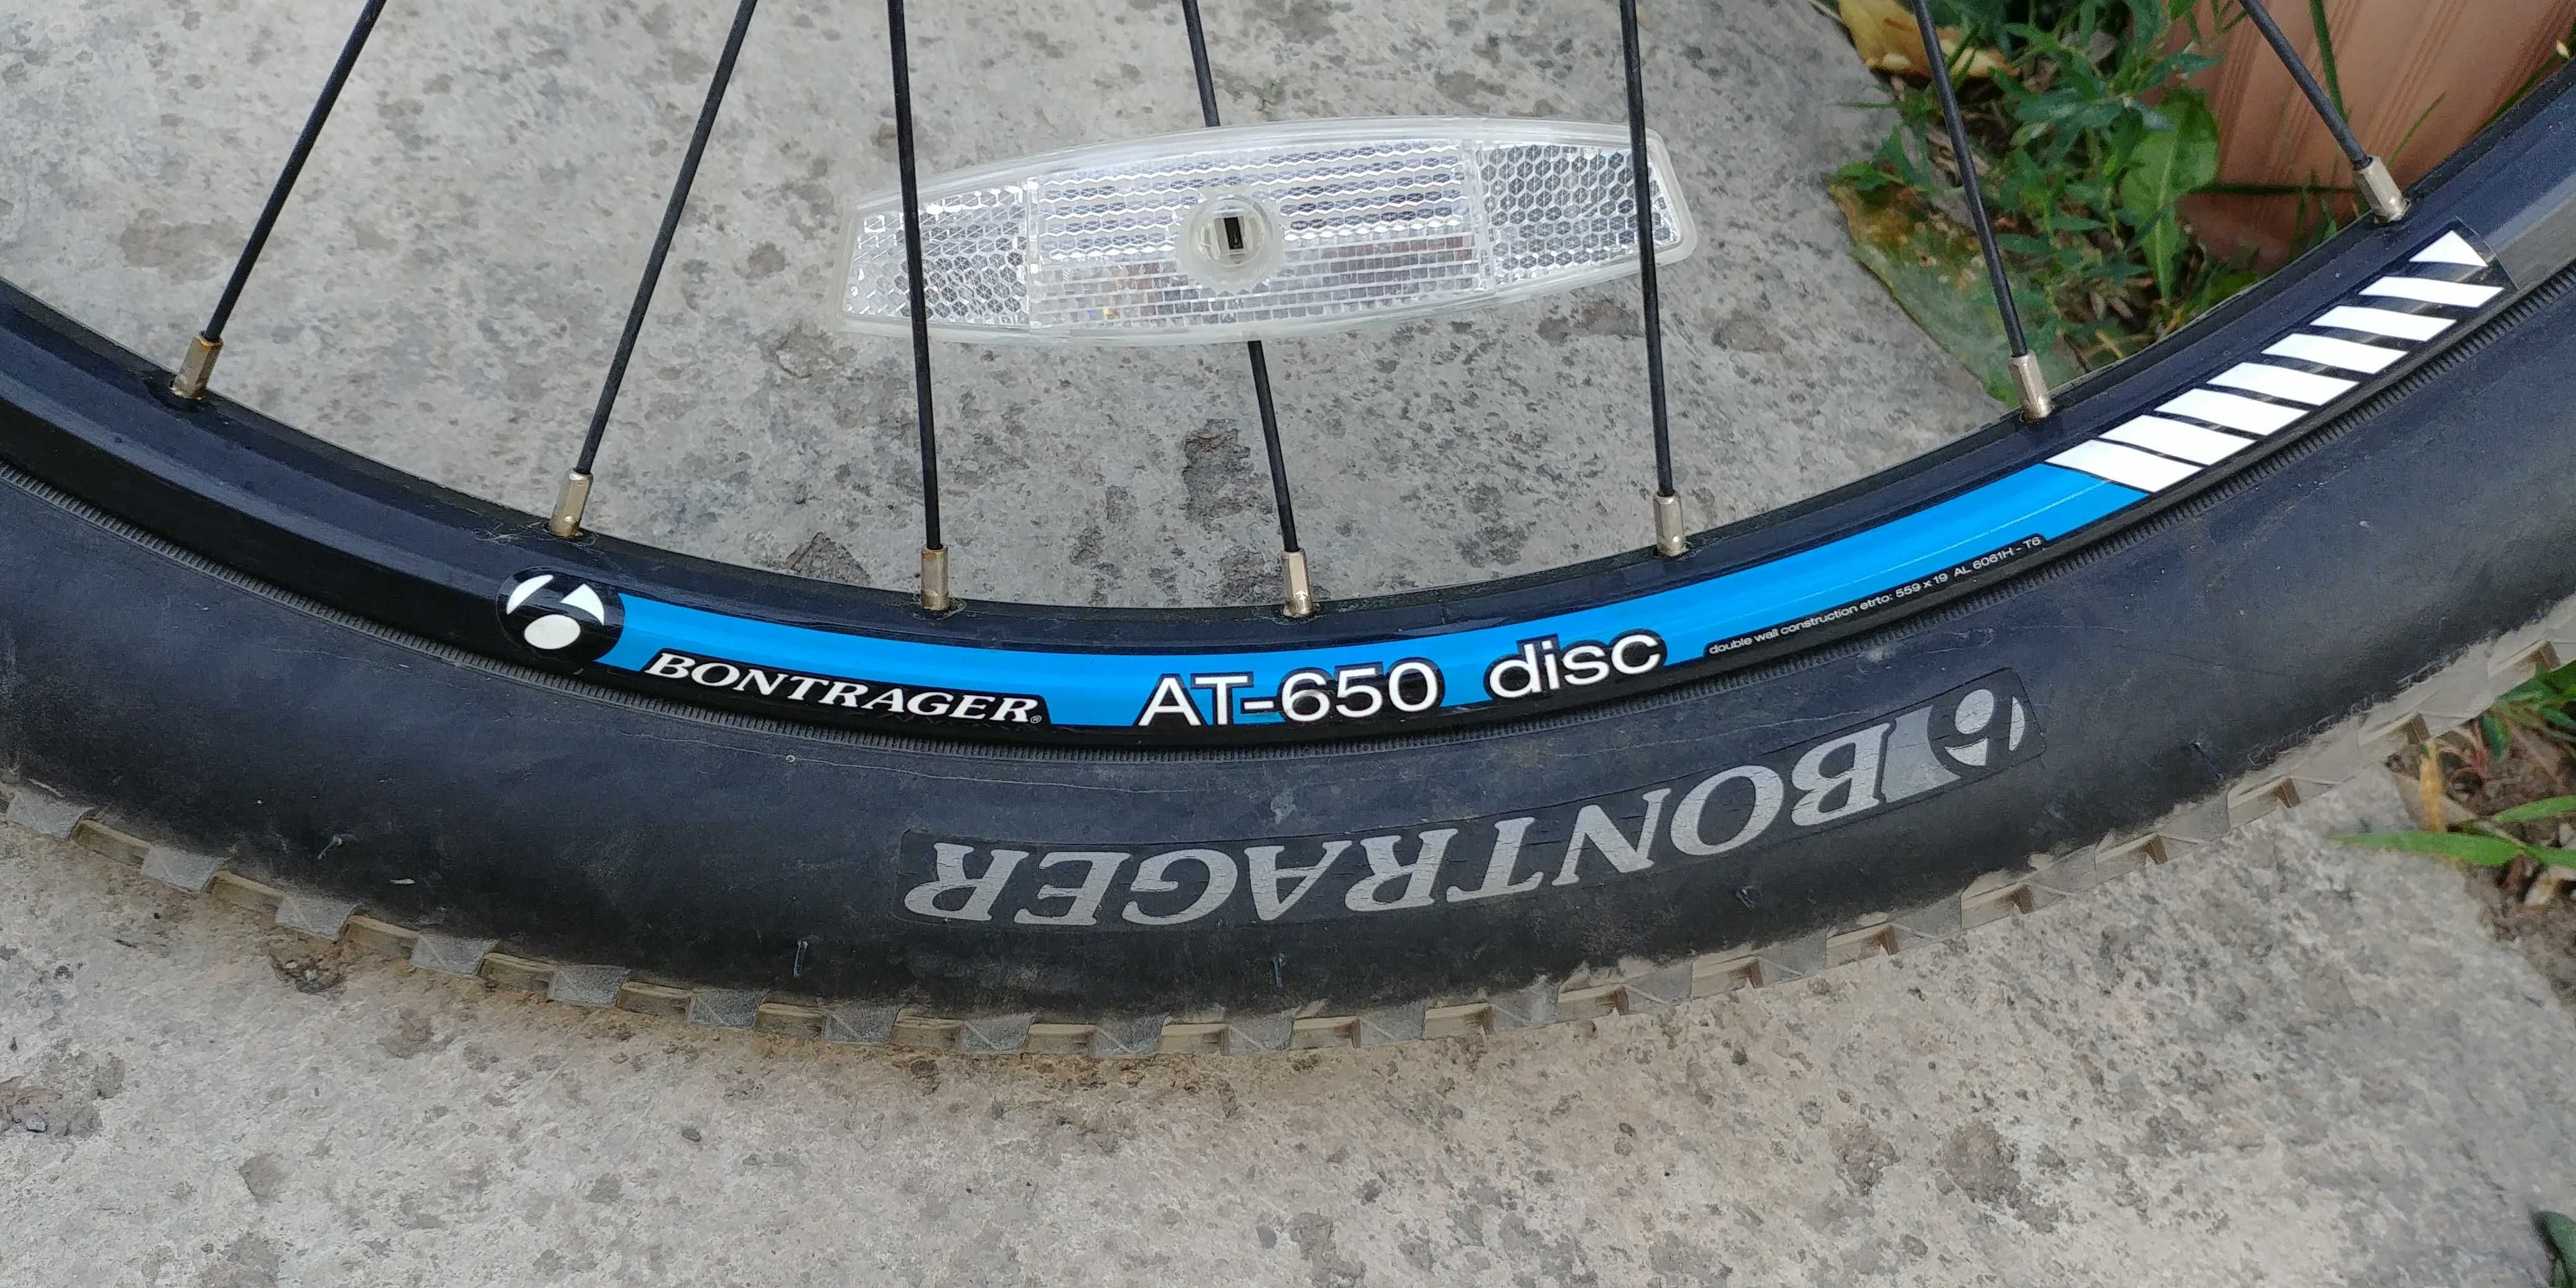 Trek 3700 disc горный велосипед